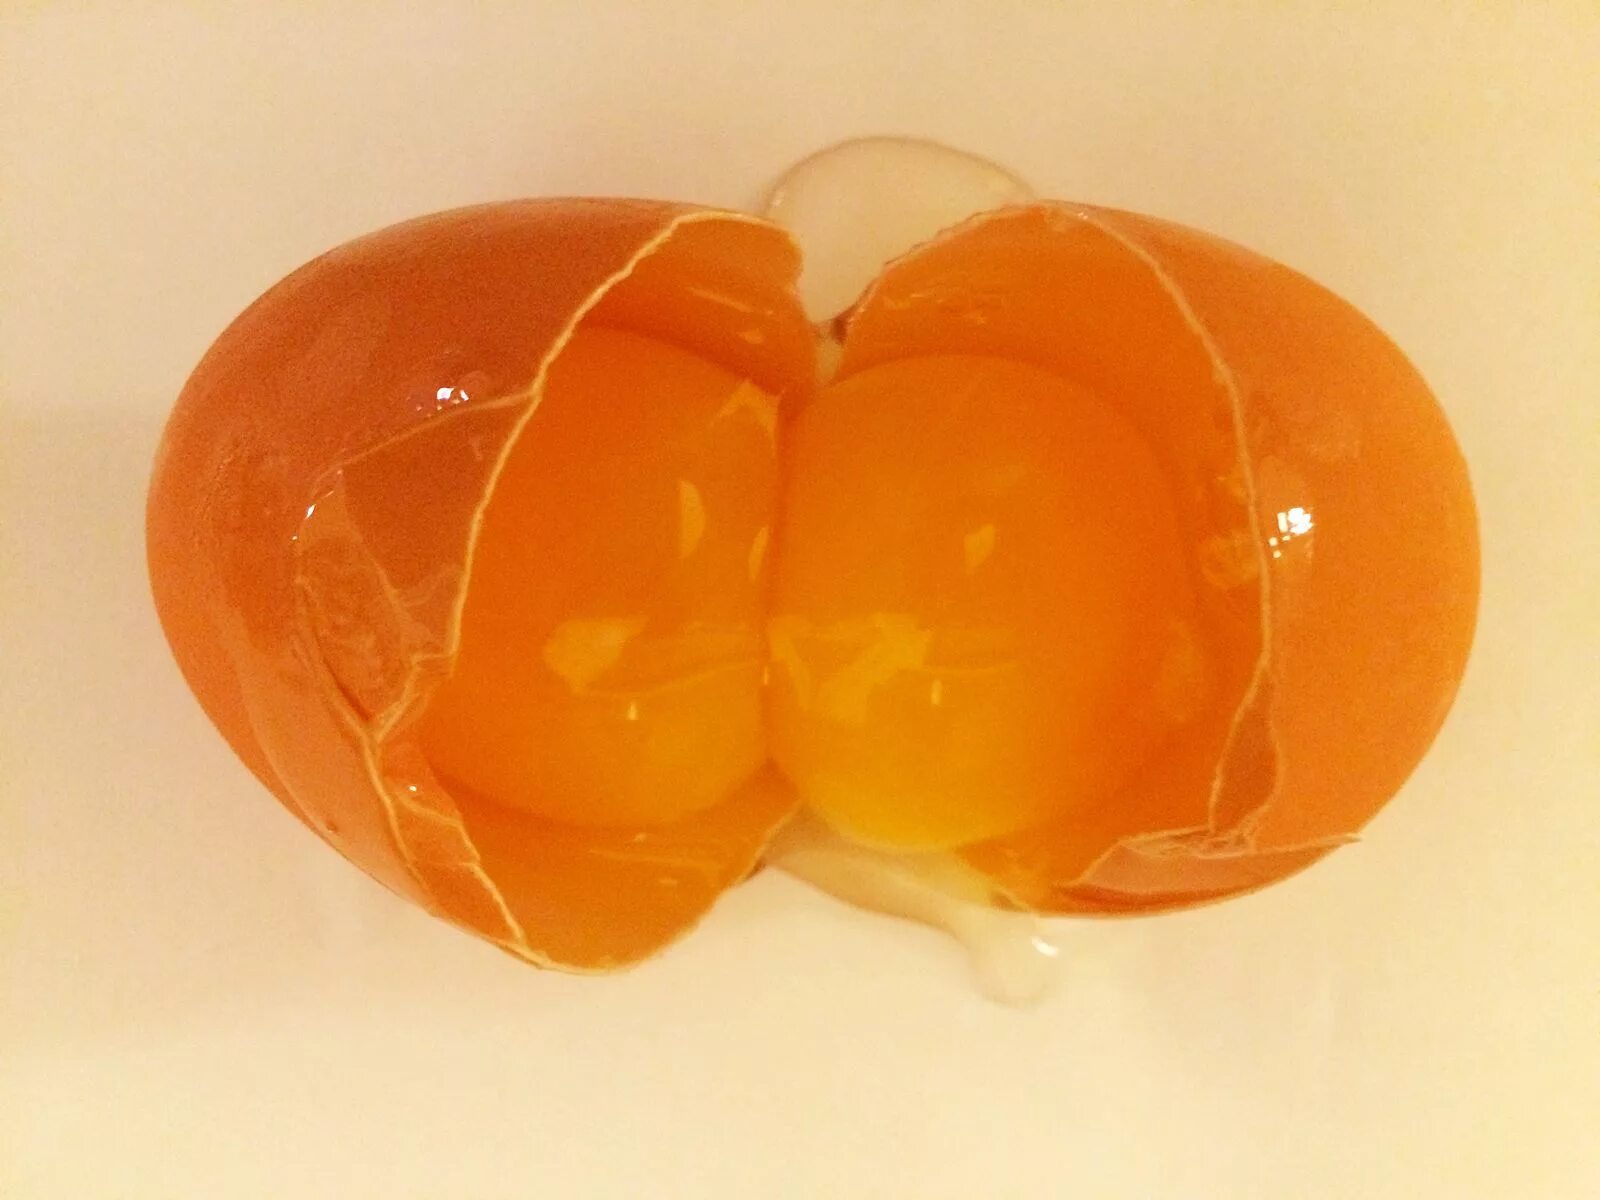 Желток прилагательное. Яйцо с 2 желтками. Двойное яйцо. Двойной желток в яйце. Еллоу яйцо.